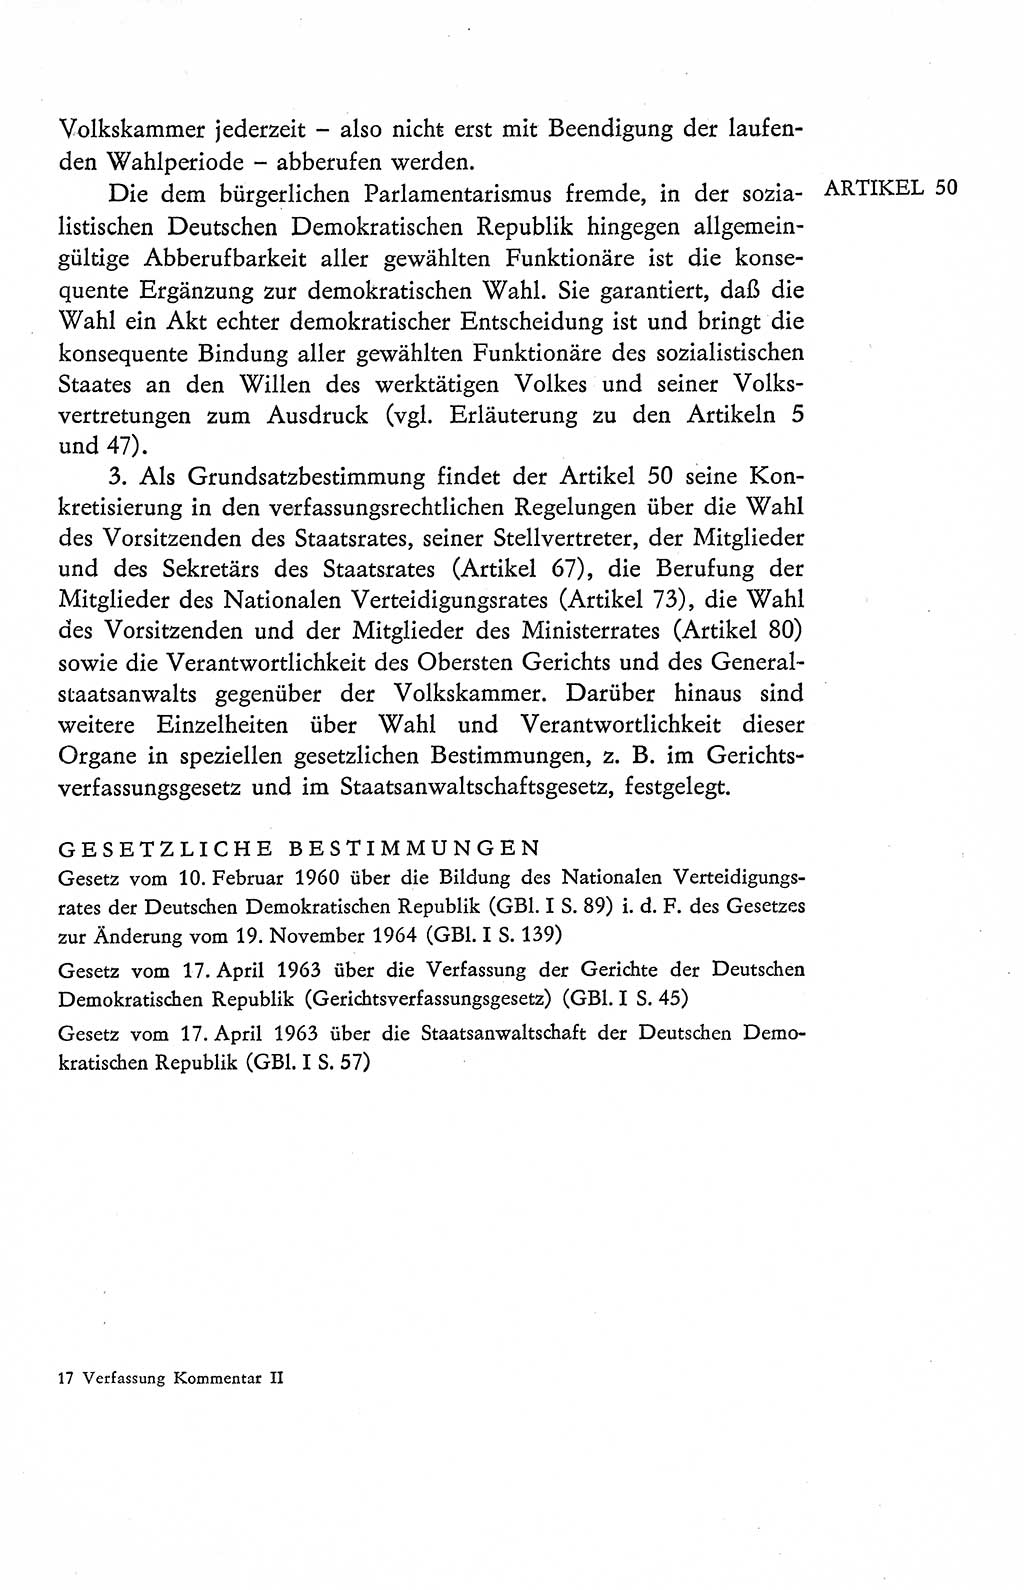 Verfassung der Deutschen Demokratischen Republik (DDR), Dokumente, Kommentar 1969, Band 2, Seite 257 (Verf. DDR Dok. Komm. 1969, Bd. 2, S. 257)